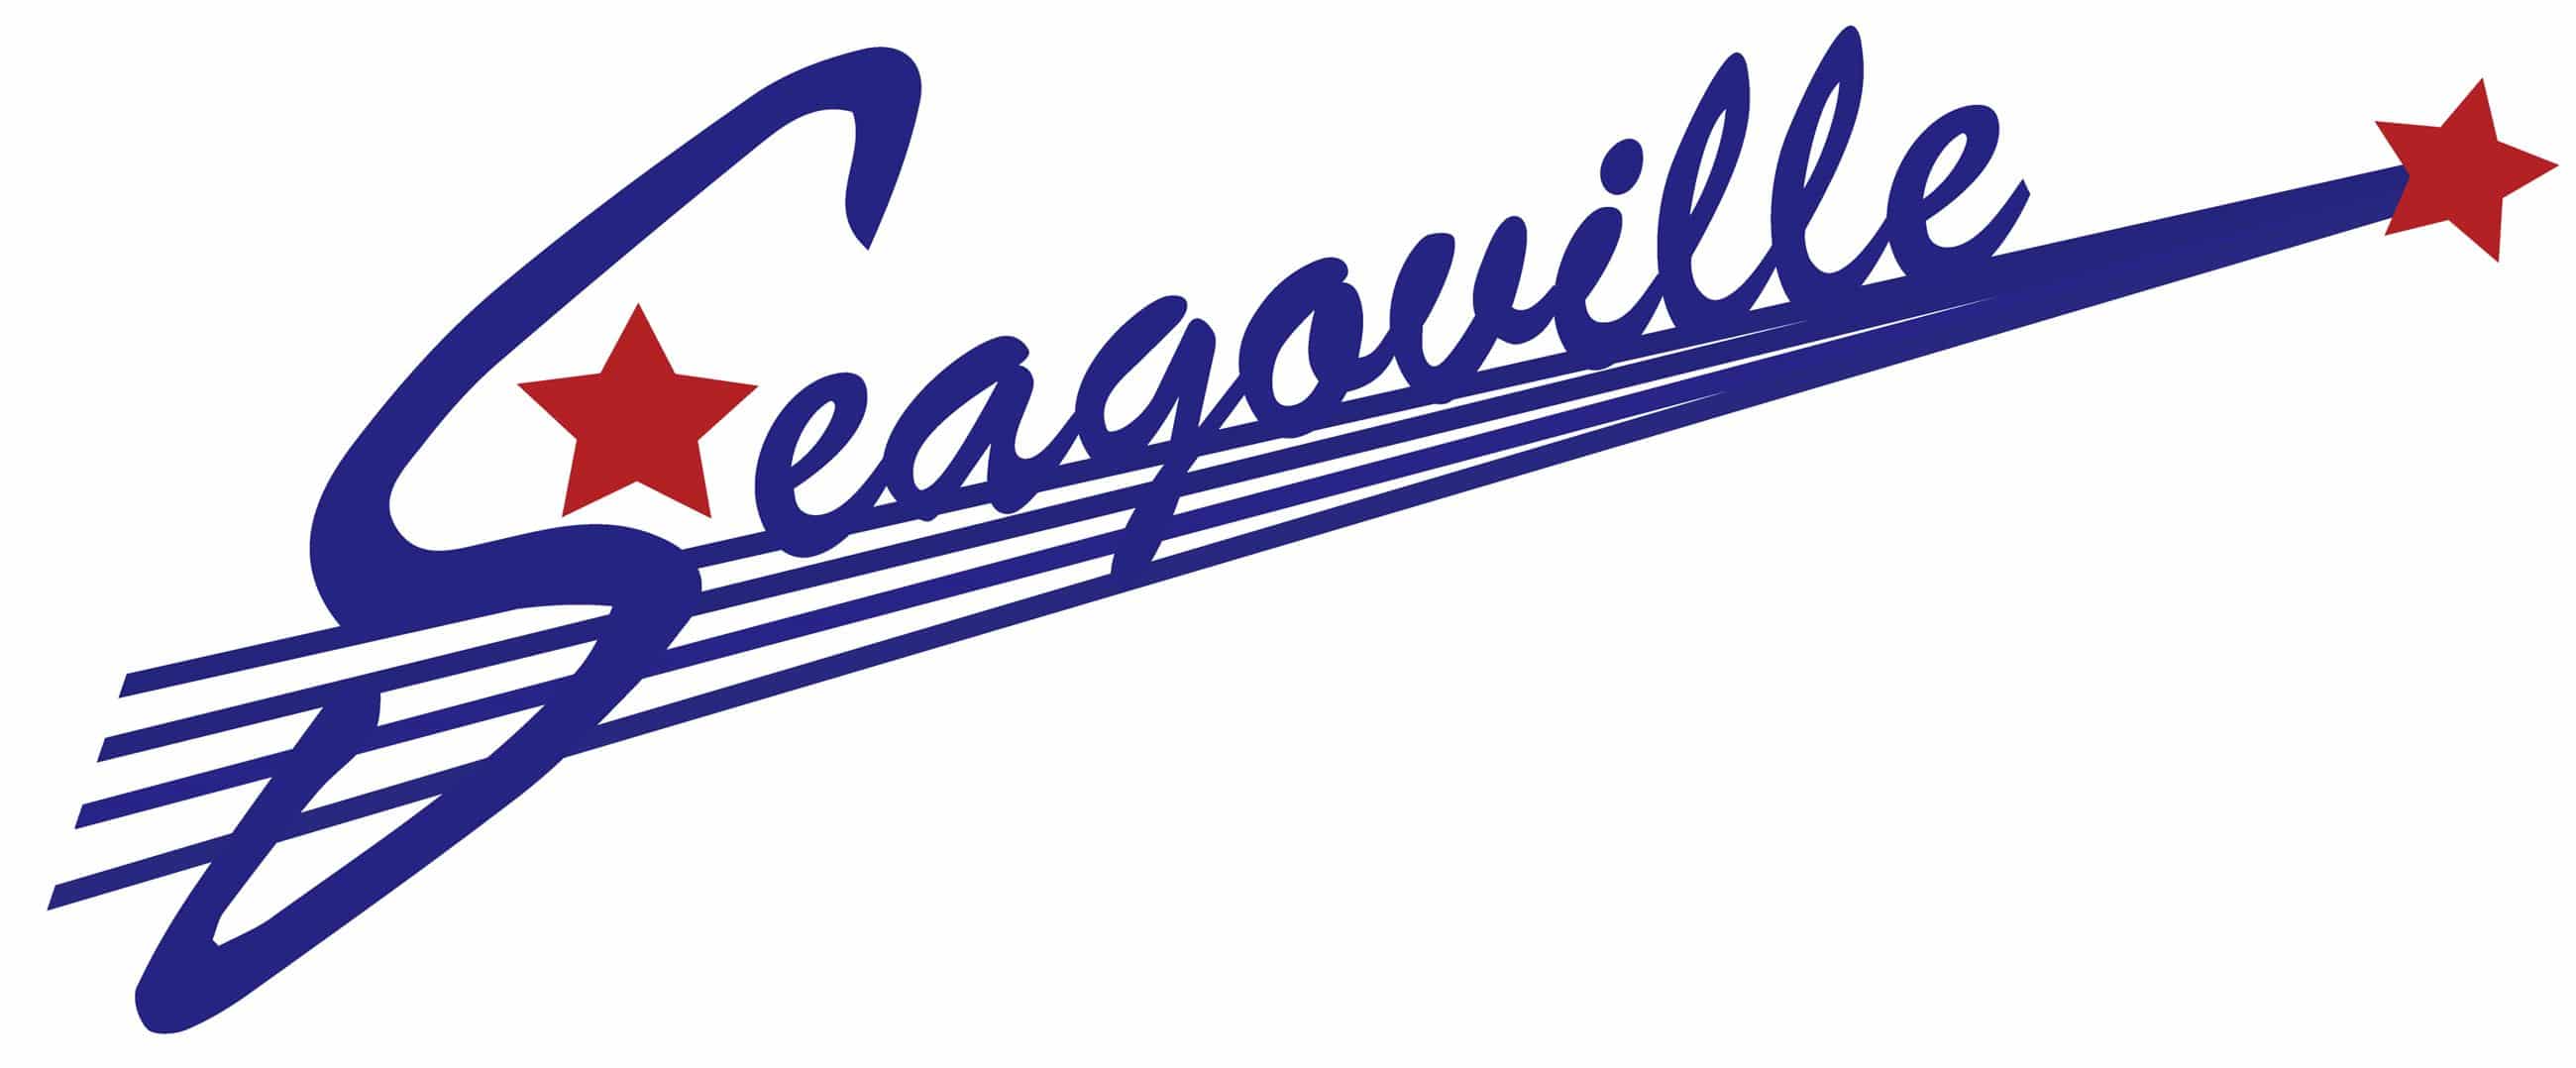 Seagoville city logo